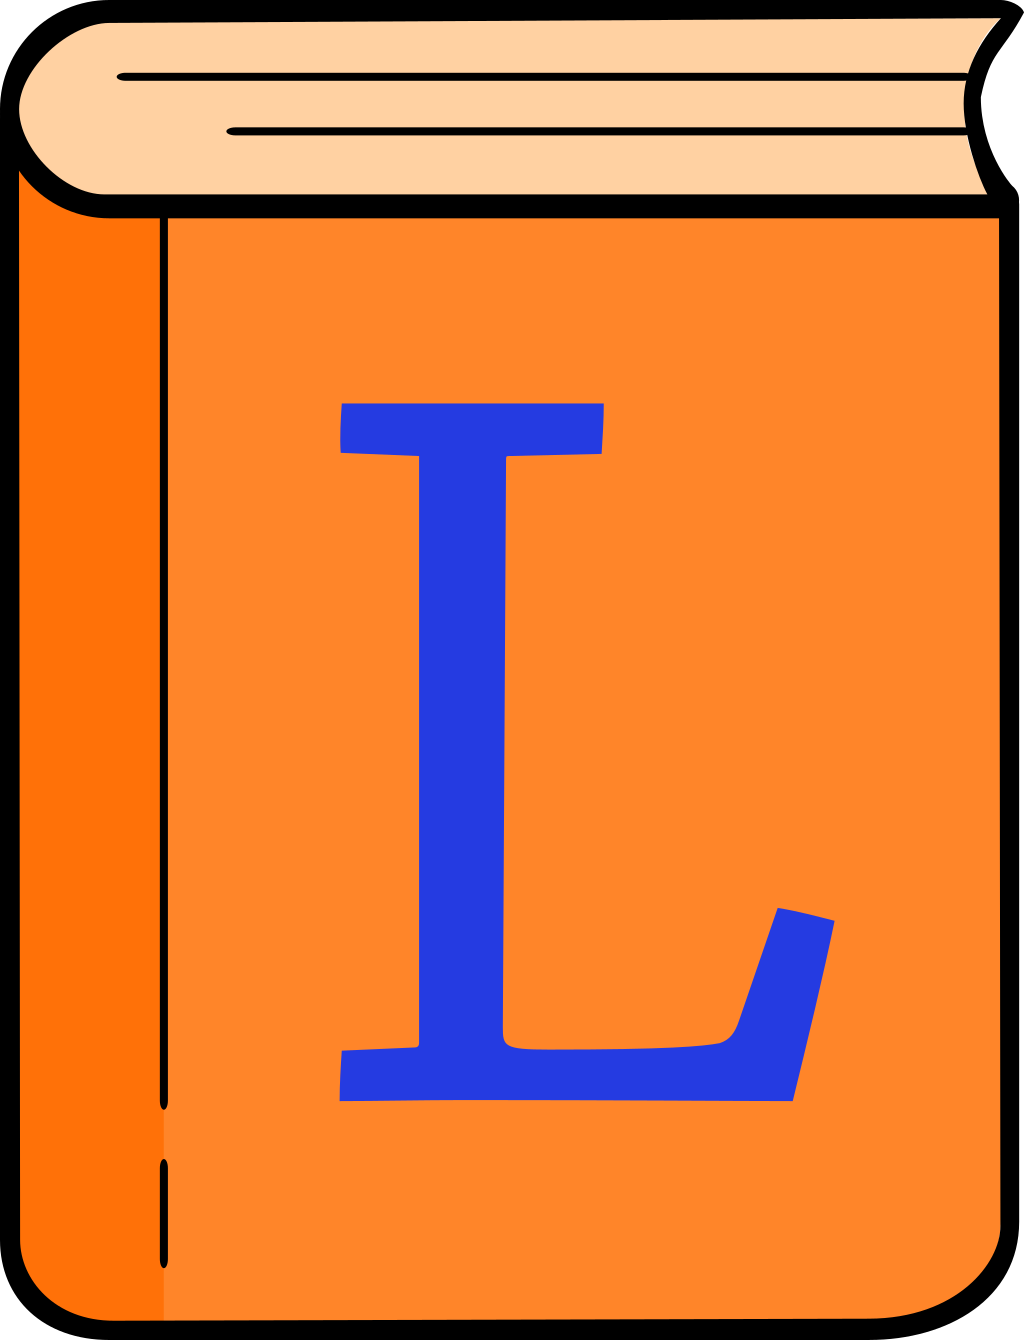 Das Icon für den Lateinguru